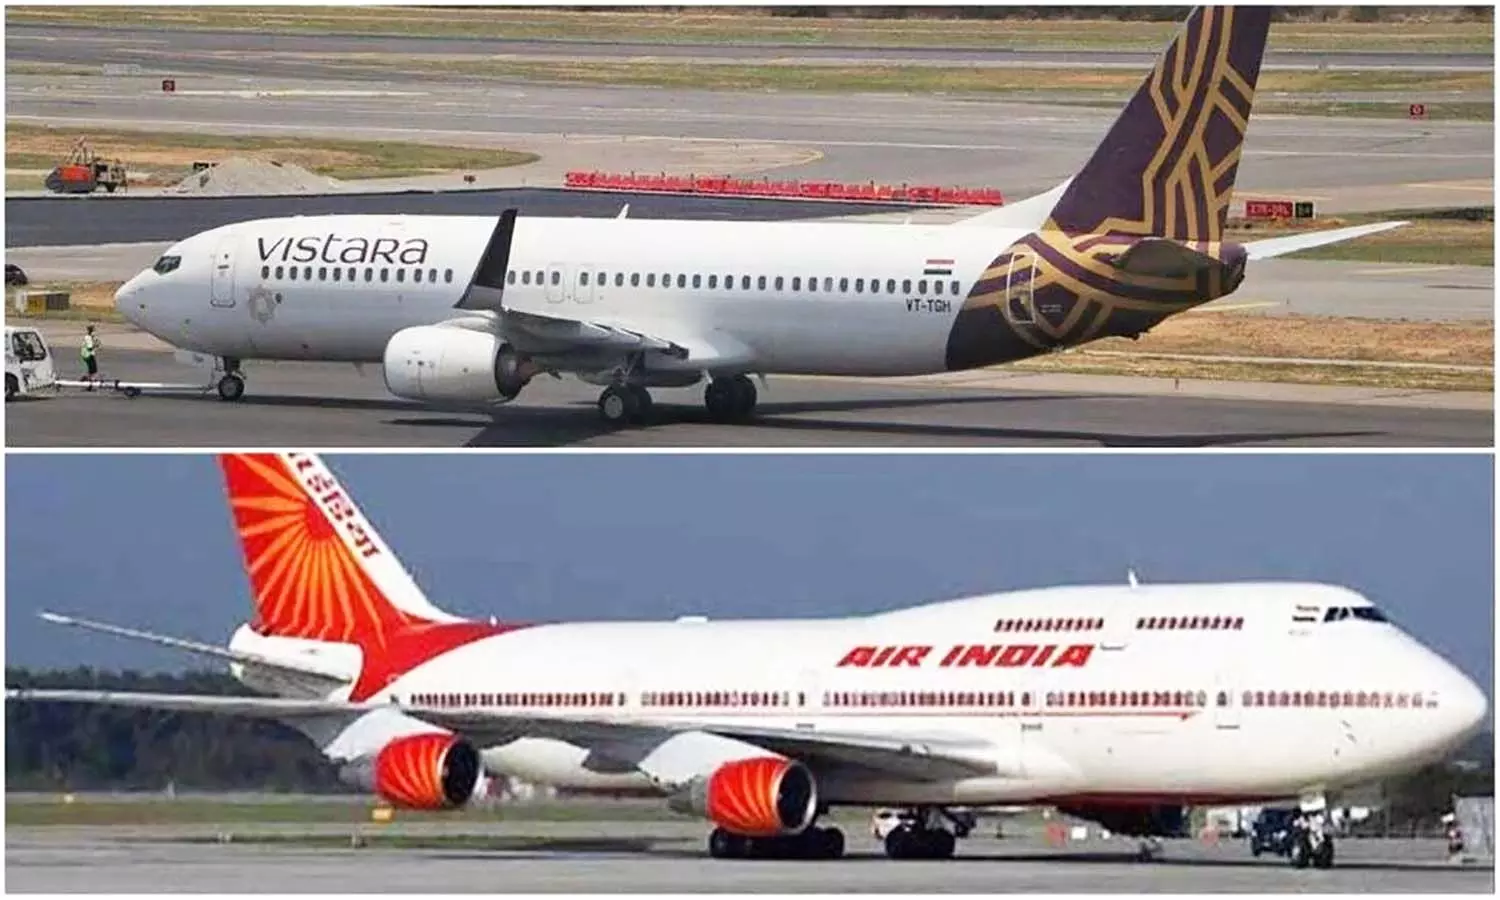 एयर इंडिया और विस्तारा की जाएंगी मर्ज, लो-कॉस्ट वाली पहली एयरलाइन बनेगी